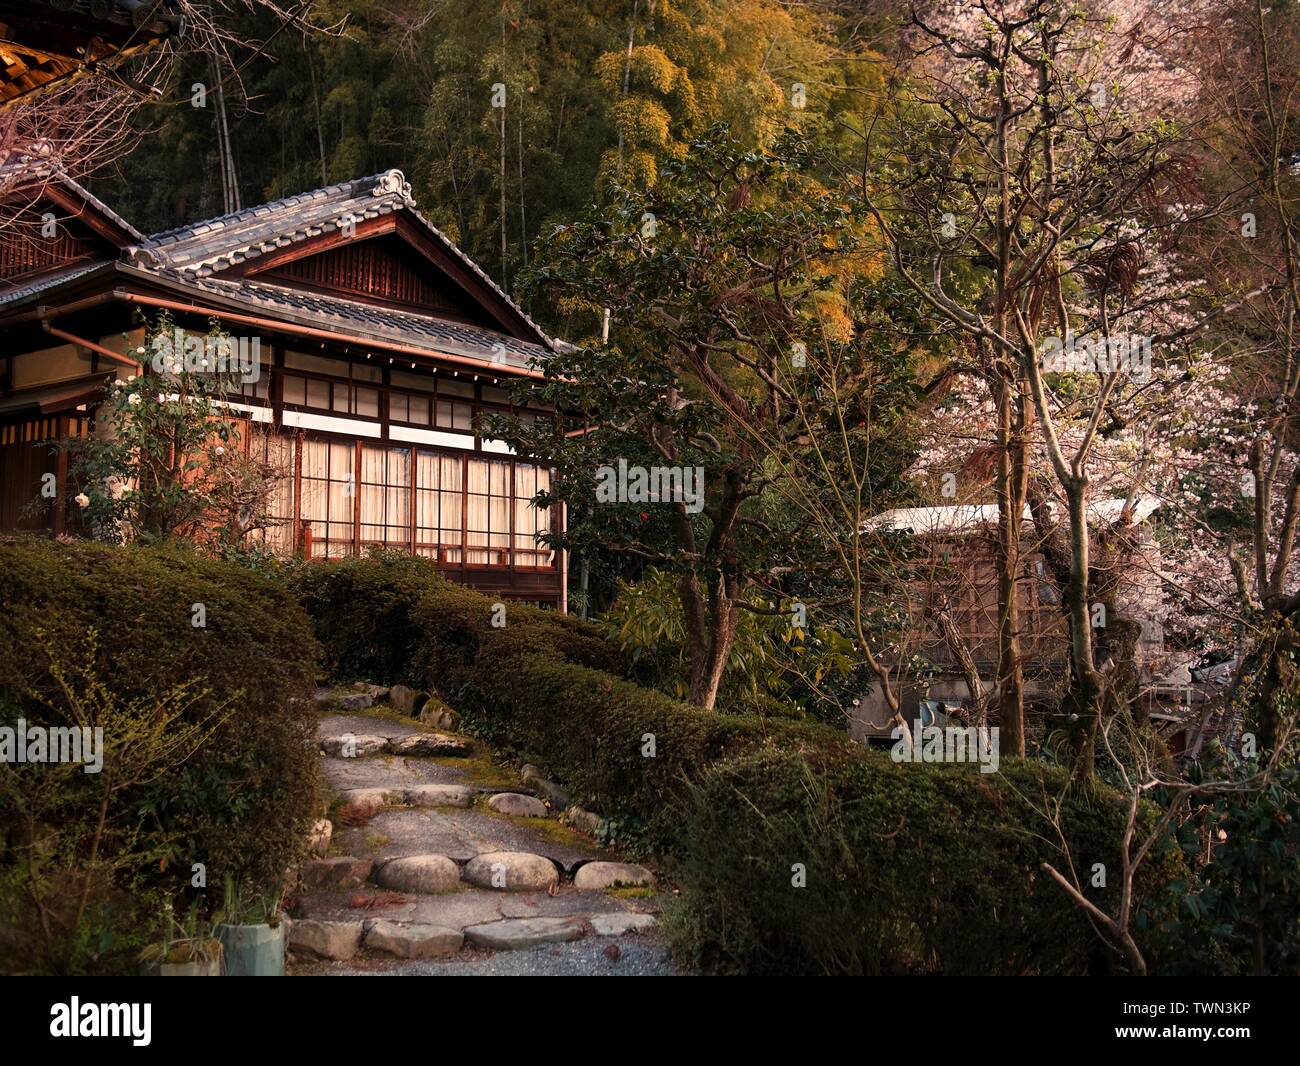 Maison traditionnelle japonaise entourée de feuillage et fleurs de cerisiers ou sakura, Japon Banque D'Images